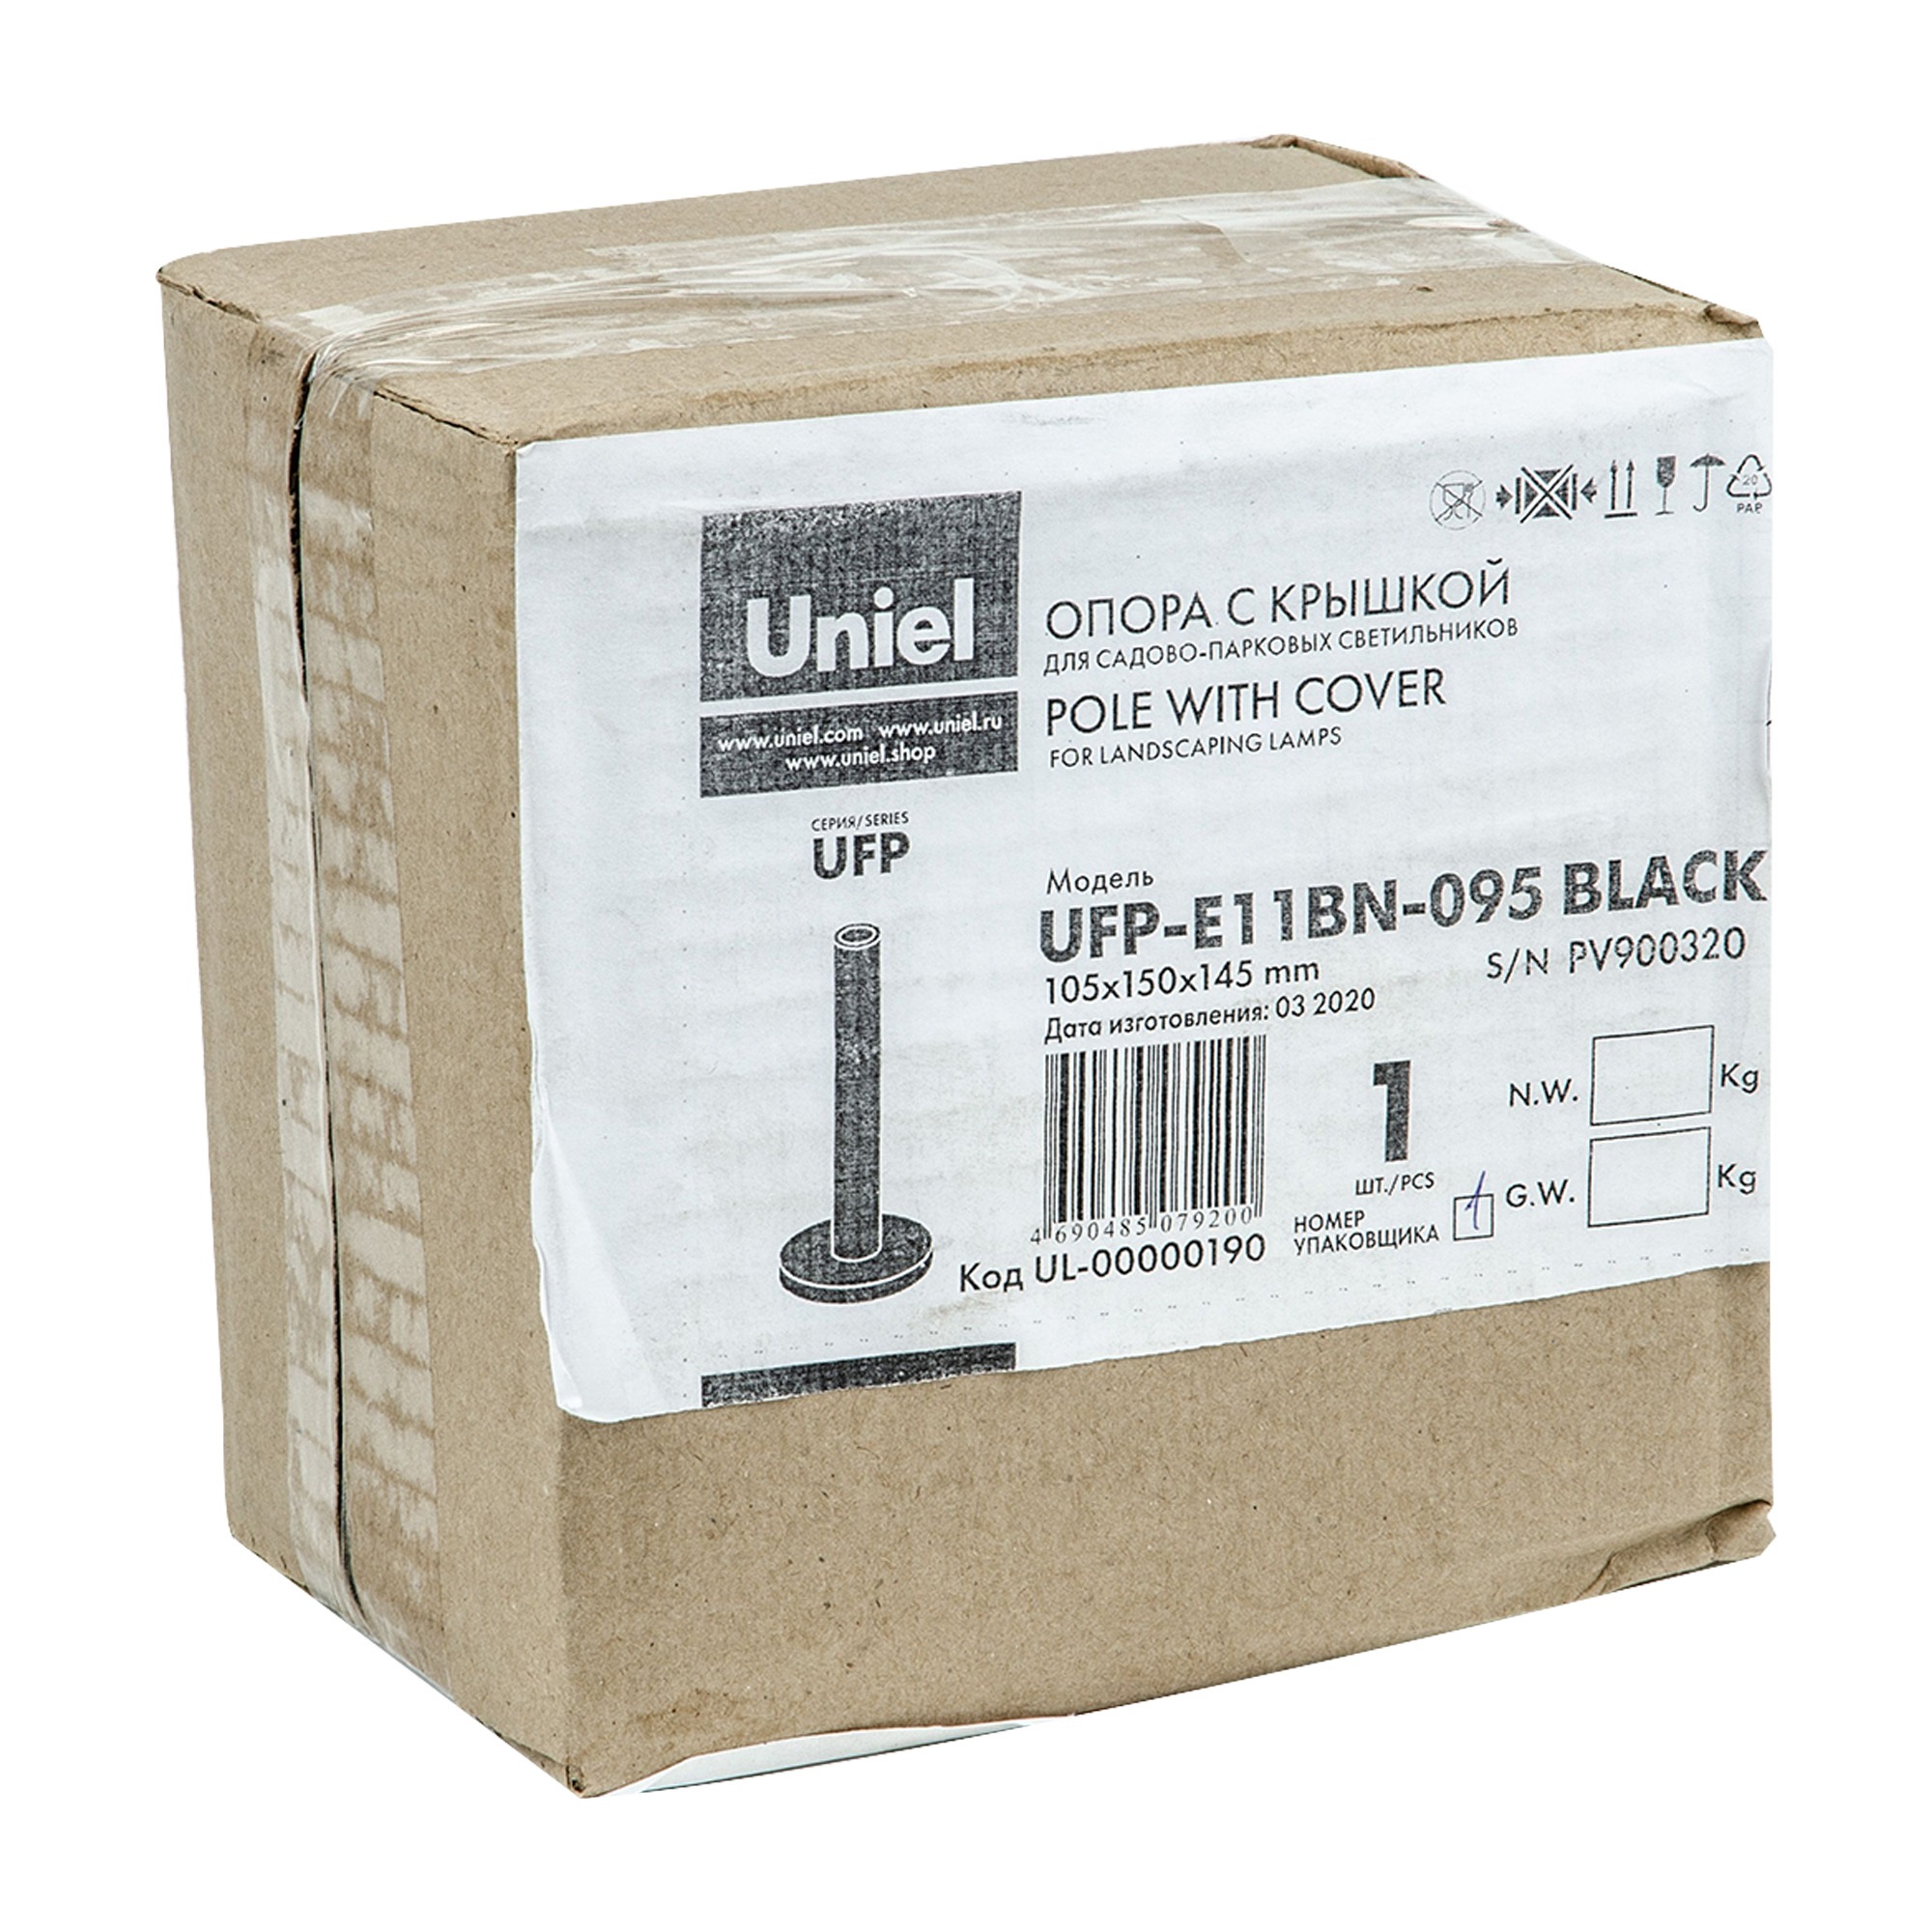 UFP-E11BN-095 BLACK Опора с крышкой для садово-парковых светильников. Высота 95мм. Материал металл. Цвет черный. Упаковка картон.